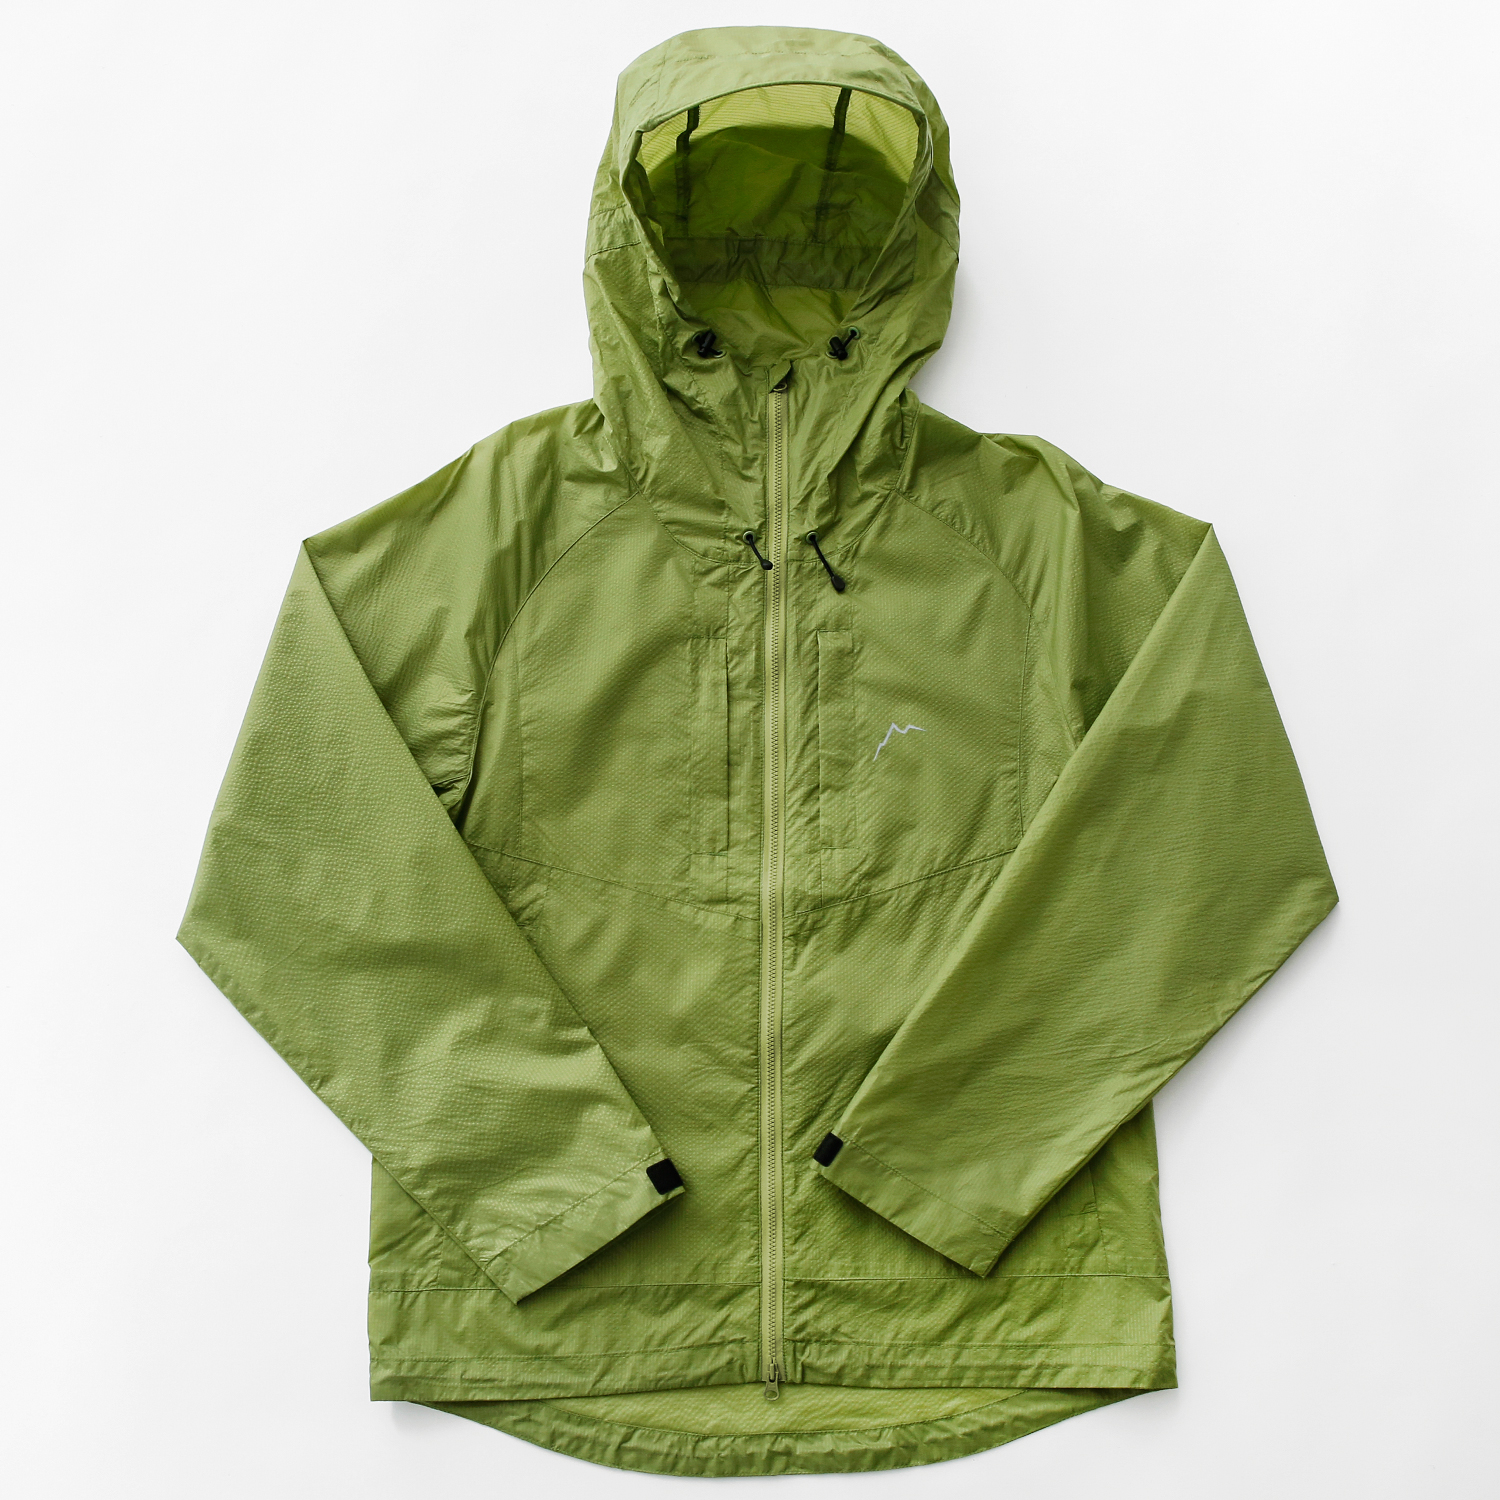 CAYL Ripstop Nylon Jacket / Green